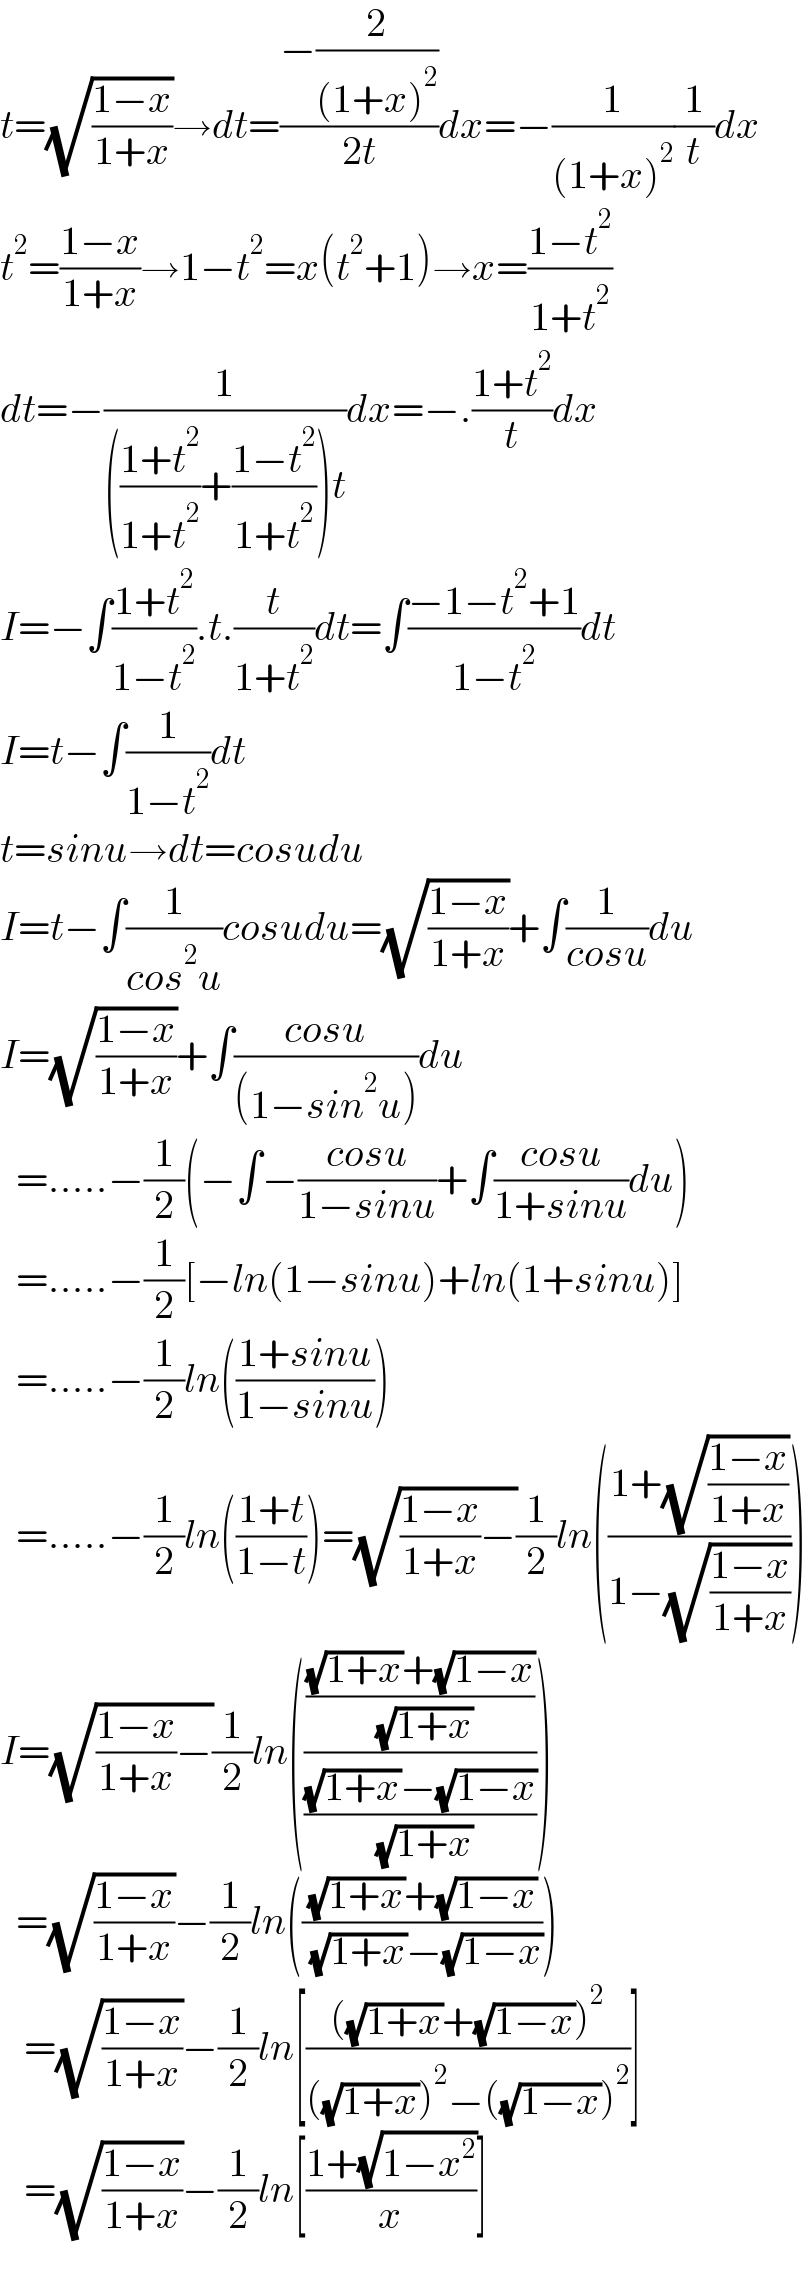 t=(√((1−x)/(1+x)))→dt=((−(2/((1+x)^2 )))/(2t))dx=−(1/((1+x)^2 ))(1/t)dx  t^2 =((1−x)/(1+x))→1−t^2 =x(t^2 +1)→x=((1−t^2 )/(1+t^2 ))  dt=−(1/((((1+t^2 )/(1+t^2 ))+((1−t^2 )/(1+t^2 )))t))dx=−.((1+t^2 )/t)dx  I=−∫((1+t^2 )/(1−t^2 )).t.(t/(1+t^2 ))dt=∫((−1−t^2 +1)/(1−t^2 ))dt  I=t−∫(1/(1−t^2 ))dt  t=sinu→dt=cosudu  I=t−∫(1/(cos^2 u))cosudu=(√((1−x)/(1+x)))+∫(1/(cosu))du  I=(√((1−x)/(1+x)))+∫((cosu)/((1−sin^2 u)))du    =.....−(1/2)(−∫−((cosu)/(1−sinu))+∫((cosu)/(1+sinu))du)    =.....−(1/2)[−ln(1−sinu)+ln(1+sinu)]    =.....−(1/2)ln(((1+sinu)/(1−sinu)))    =.....−(1/2)ln(((1+t)/(1−t)))=(√(((1−x)/(1+x))−))(1/2)ln(((1+(√((1−x)/(1+x))))/(1−(√((1−x)/(1+x))))))  I=(√(((1−x)/(1+x))−))(1/2)ln(((((√(1+x))+(√(1−x)))/( (√(1+x))))/(((√(1+x))−(√(1−x)))/( (√(1+x))))))    =(√((1−x)/(1+x)))−(1/2)ln((((√(1+x))+(√(1−x)))/( (√(1+x))−(√(1−x)))))     =(√((1−x)/(1+x)))−(1/2)ln[((((√(1+x))+(√(1−x)))^2 )/(((√(1+x)))^2 −((√(1−x)))^2 ))]     =(√((1−x)/(1+x)))−(1/2)ln[((1+(√(1−x^2 )))/x)]    